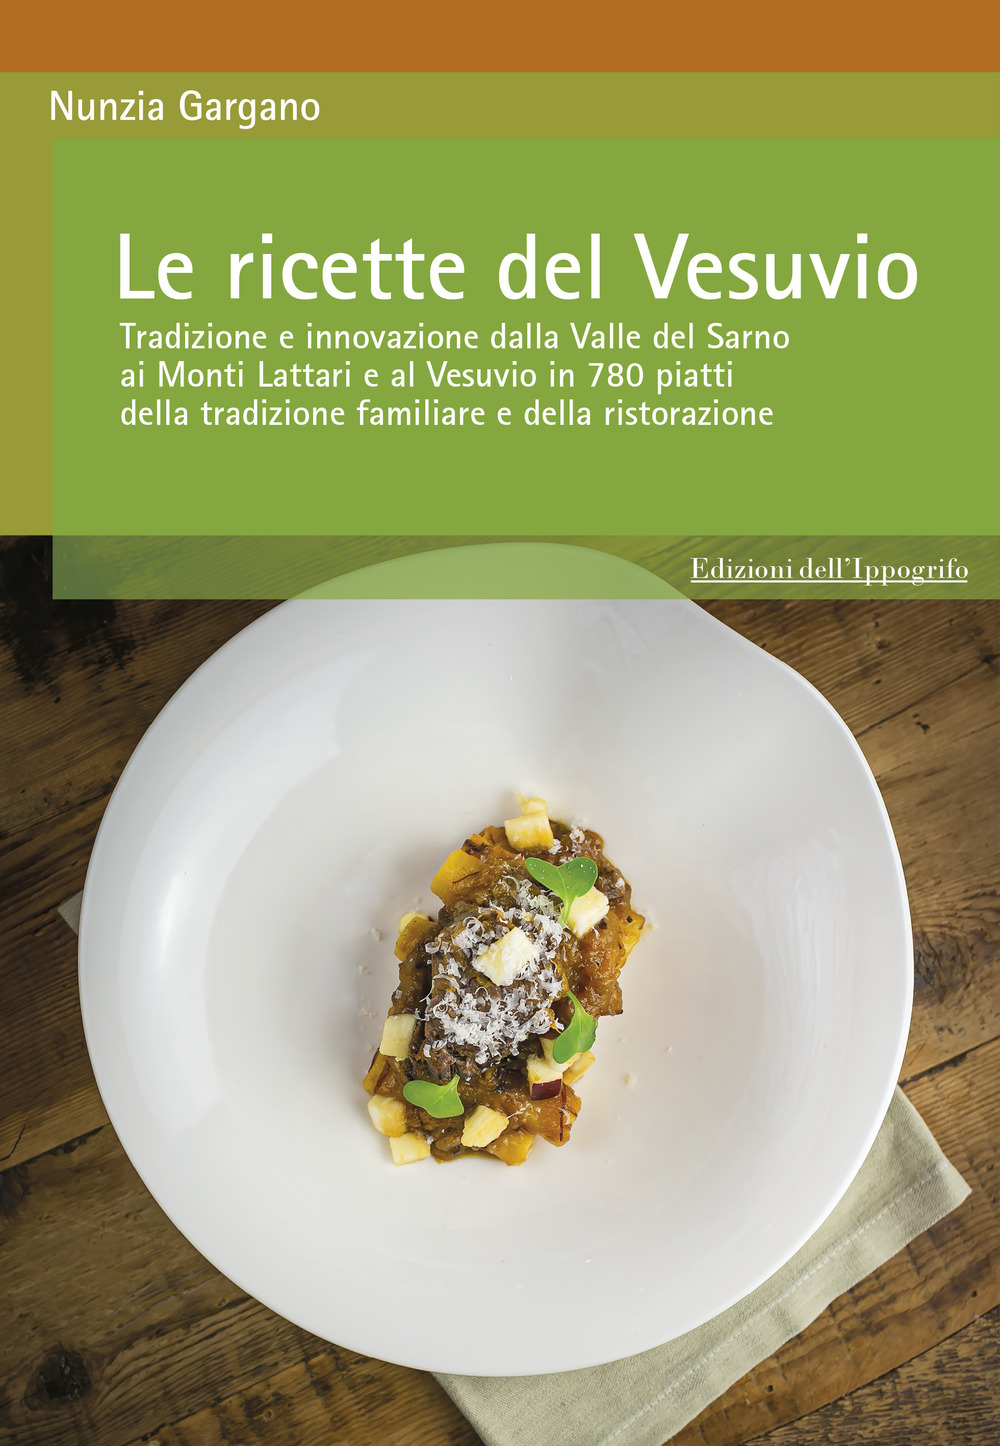 Image of Le ricette del Vesuvio. Tradizione e innovazione dalla Valle del Sarno, ai Monti Lattari e Vesuvio in 780 piatti della tradizione familiare e della ristorazione